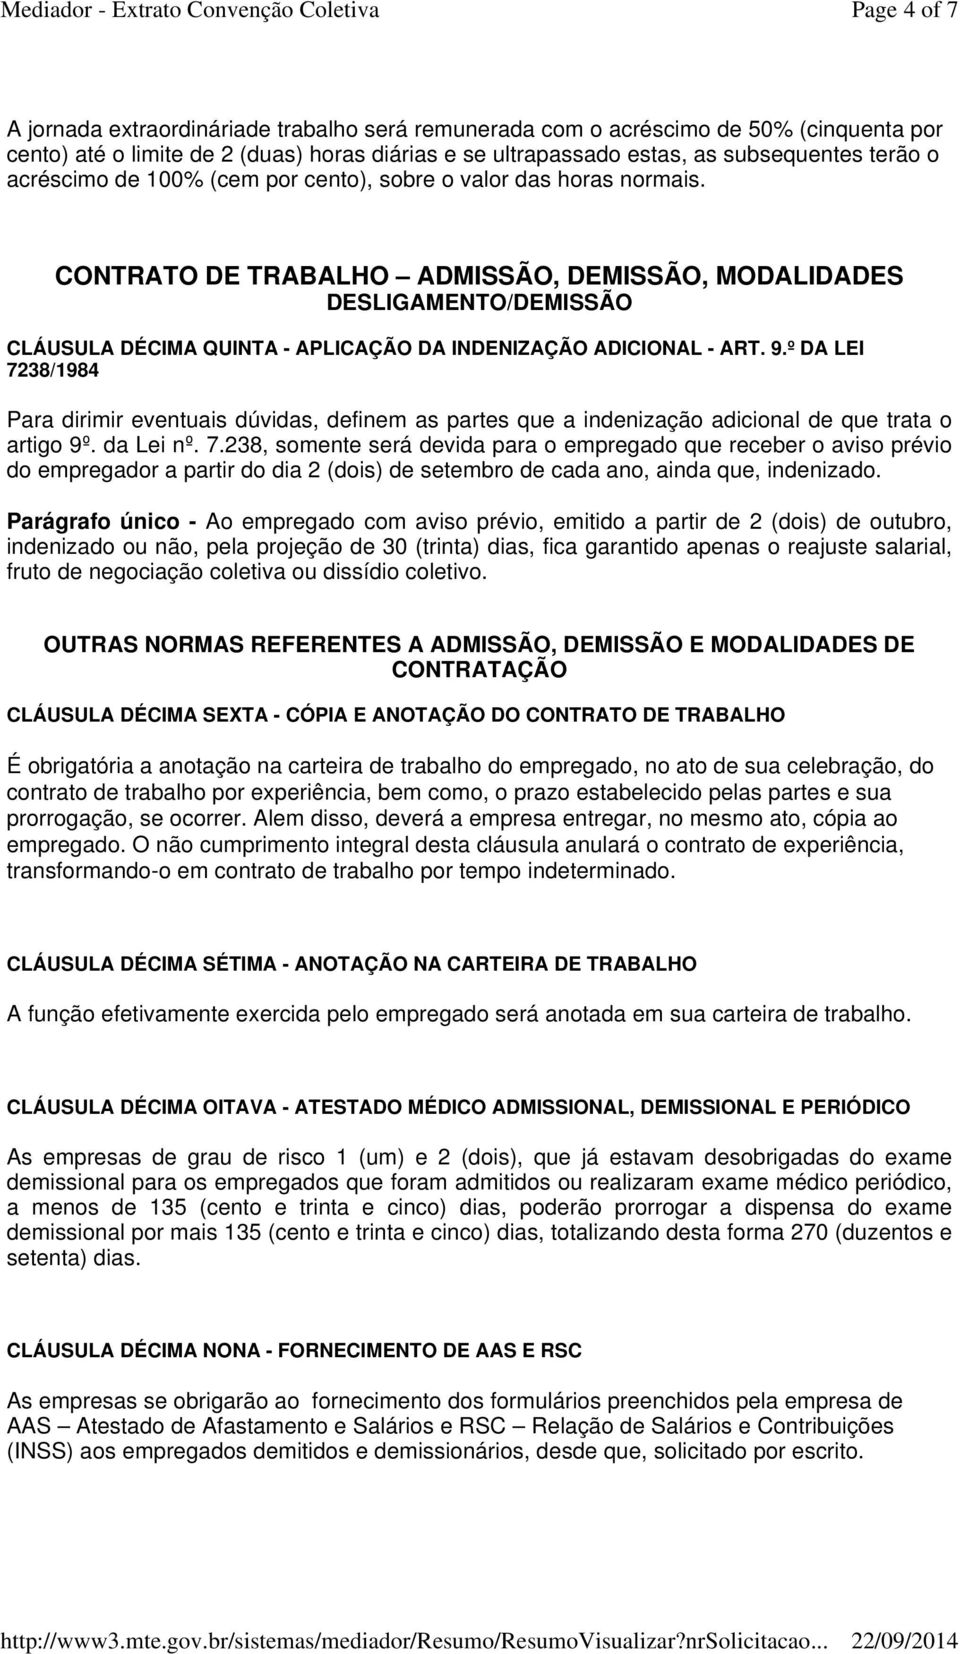 CONTRATO DE TRABALHO ADMISSÃO, DEMISSÃO, MODALIDADES DESLIGAMENTO/DEMISSÃO CLÁUSULA DÉCIMA QUINTA - APLICAÇÃO DA INDENIZAÇÃO ADICIONAL - ART. 9.